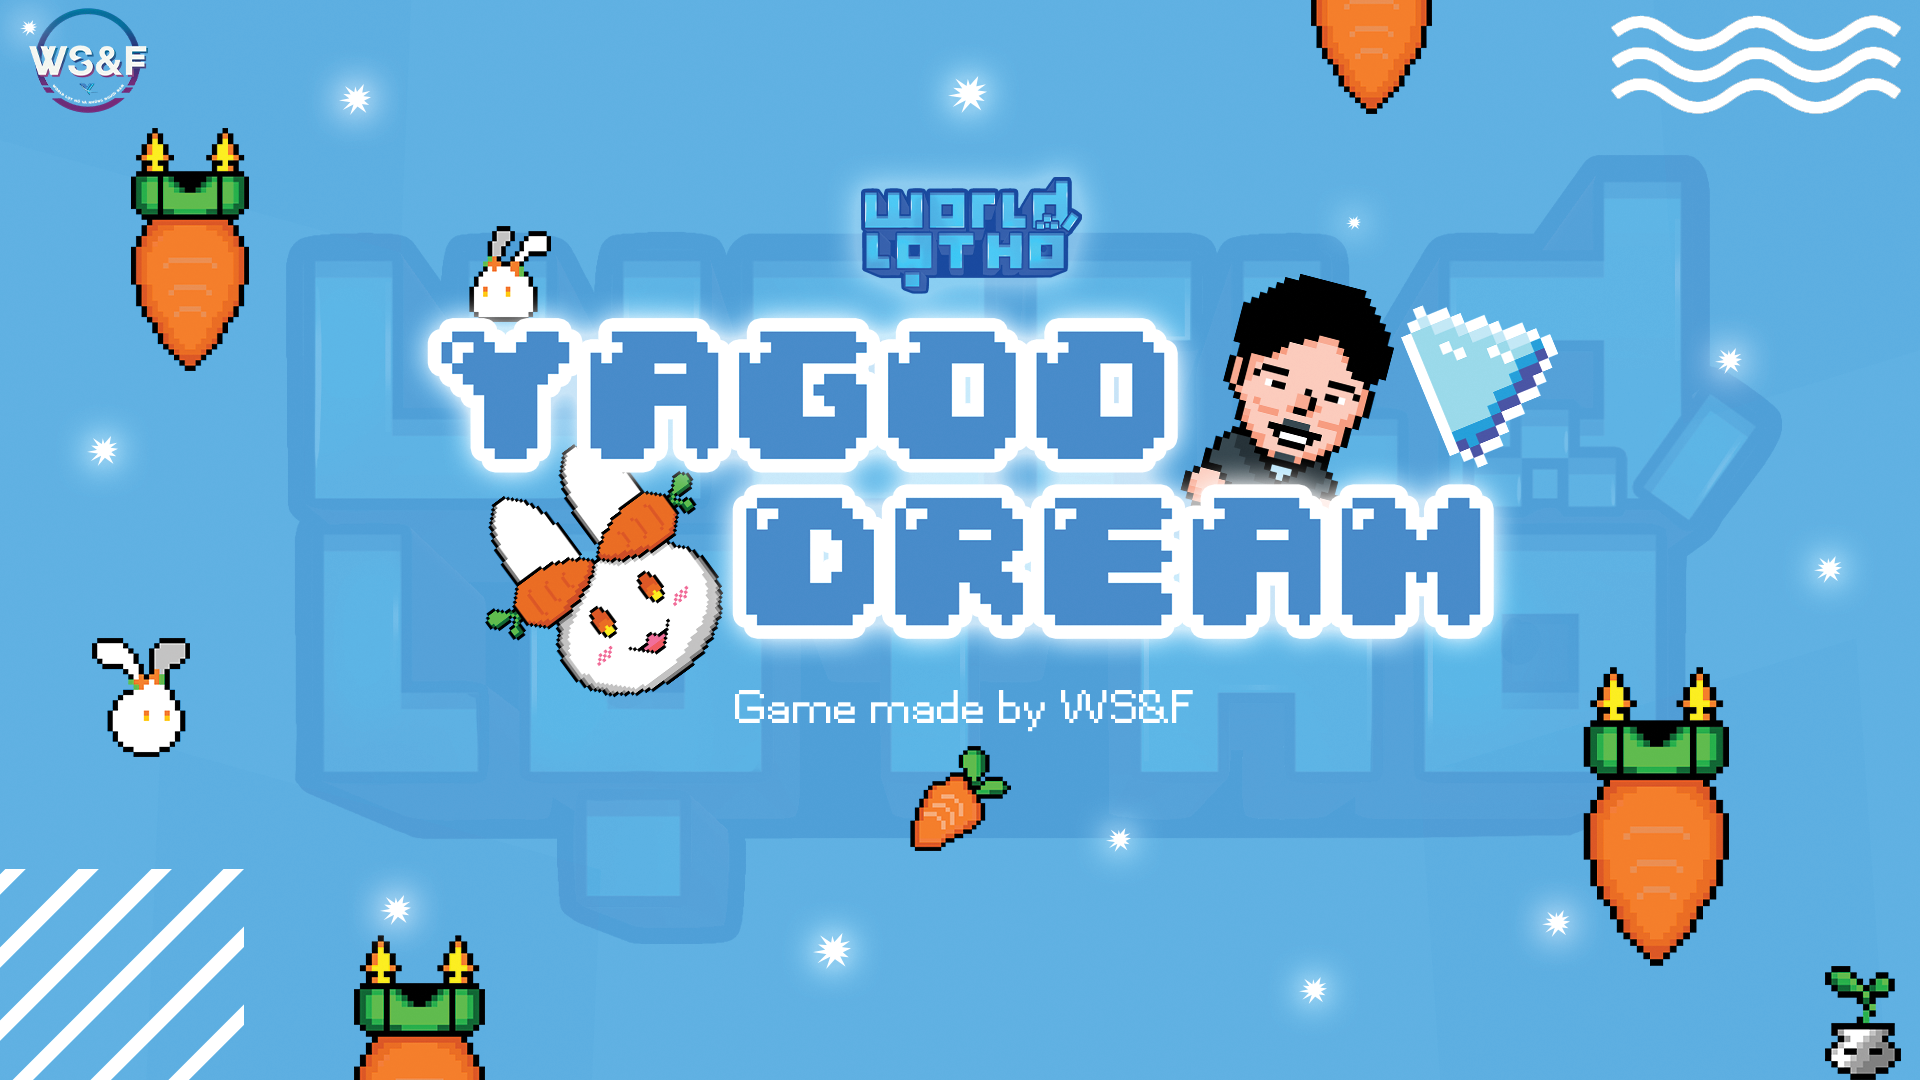 Yagoo Dream